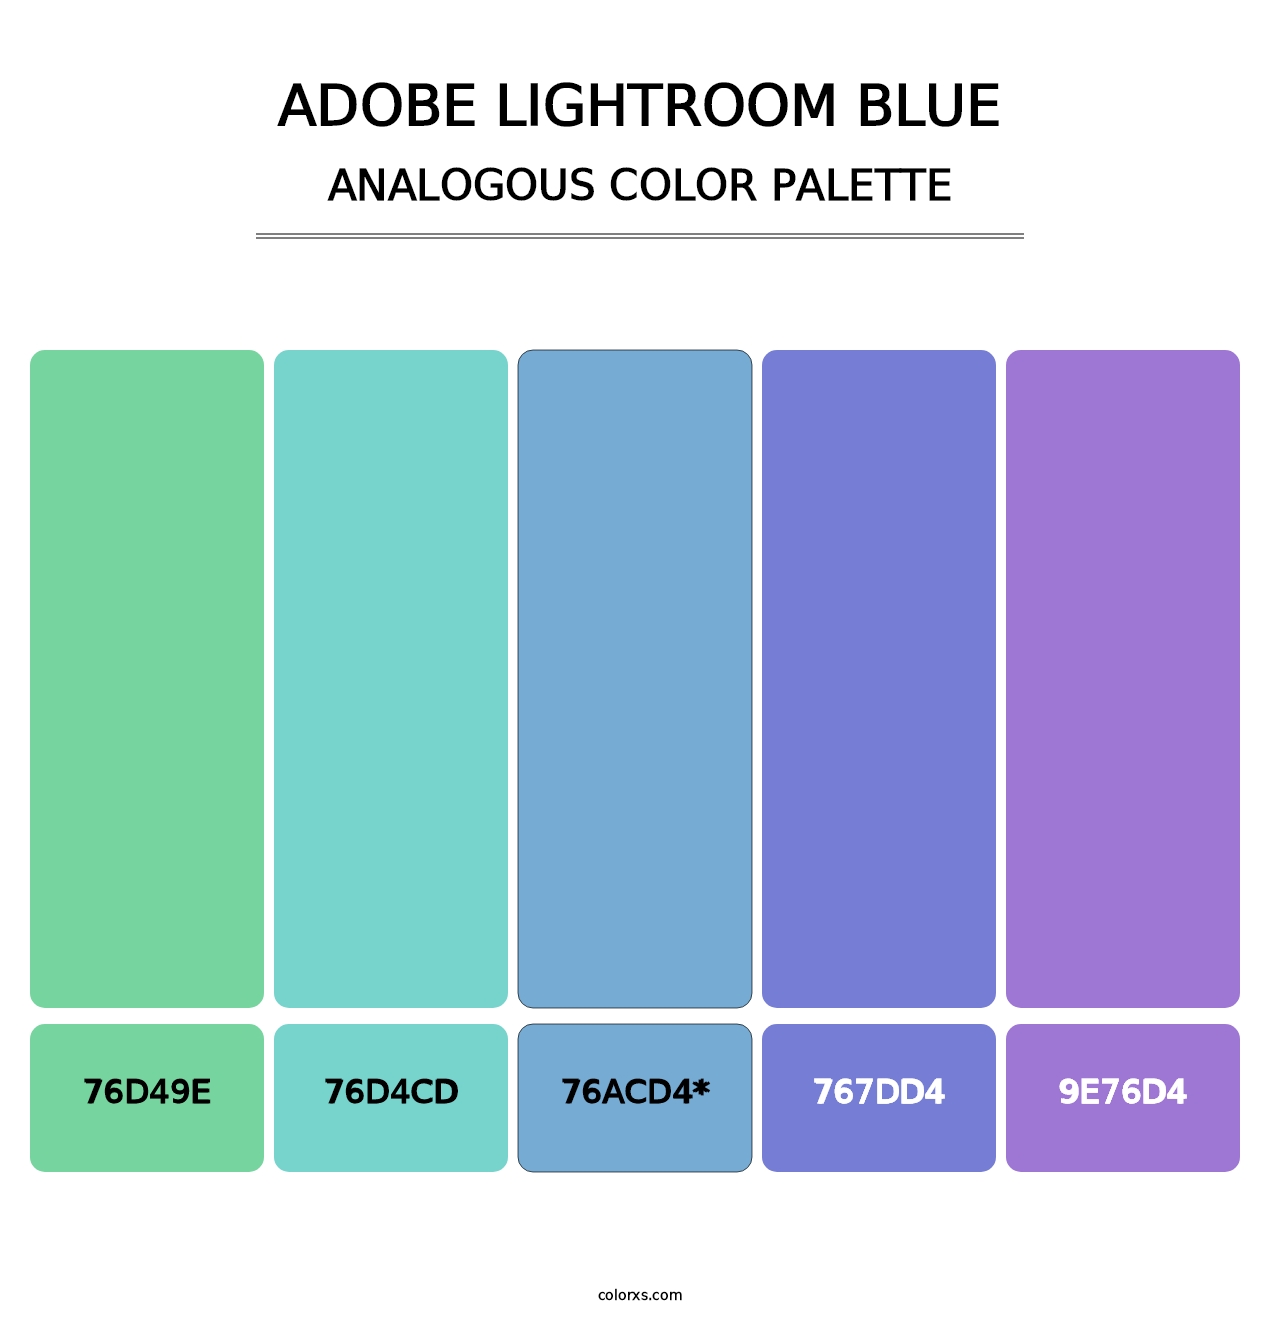 Adobe Lightroom Blue - Analogous Color Palette